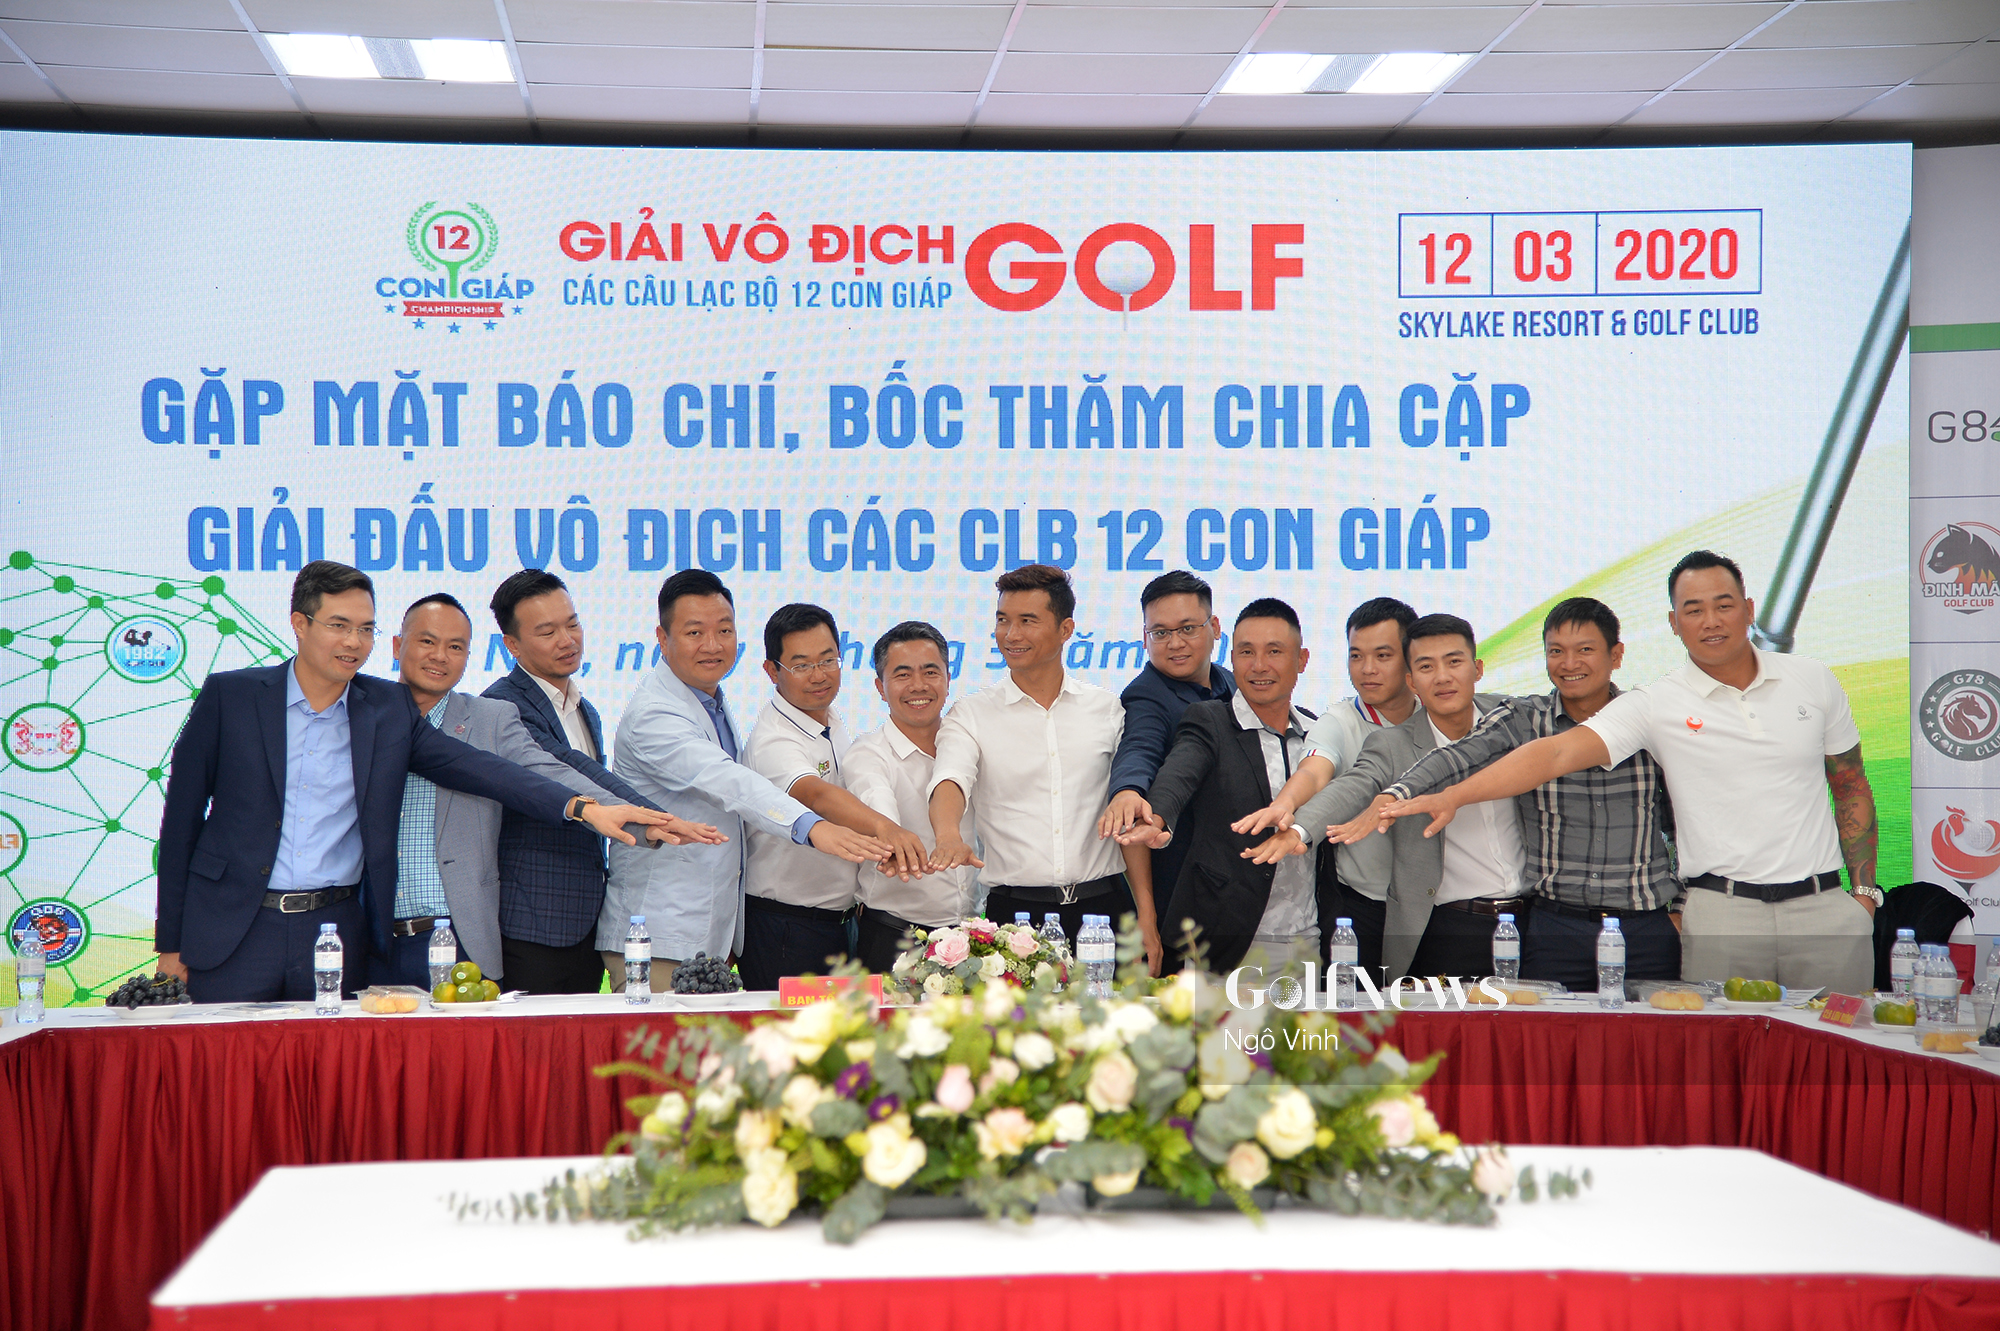 Giải Vô địch các CLB 12 con Giáp: Sự kiện golf phong trào đầu tiên được Sở Văn hoá và Thể thao Hà Nội cấp phép